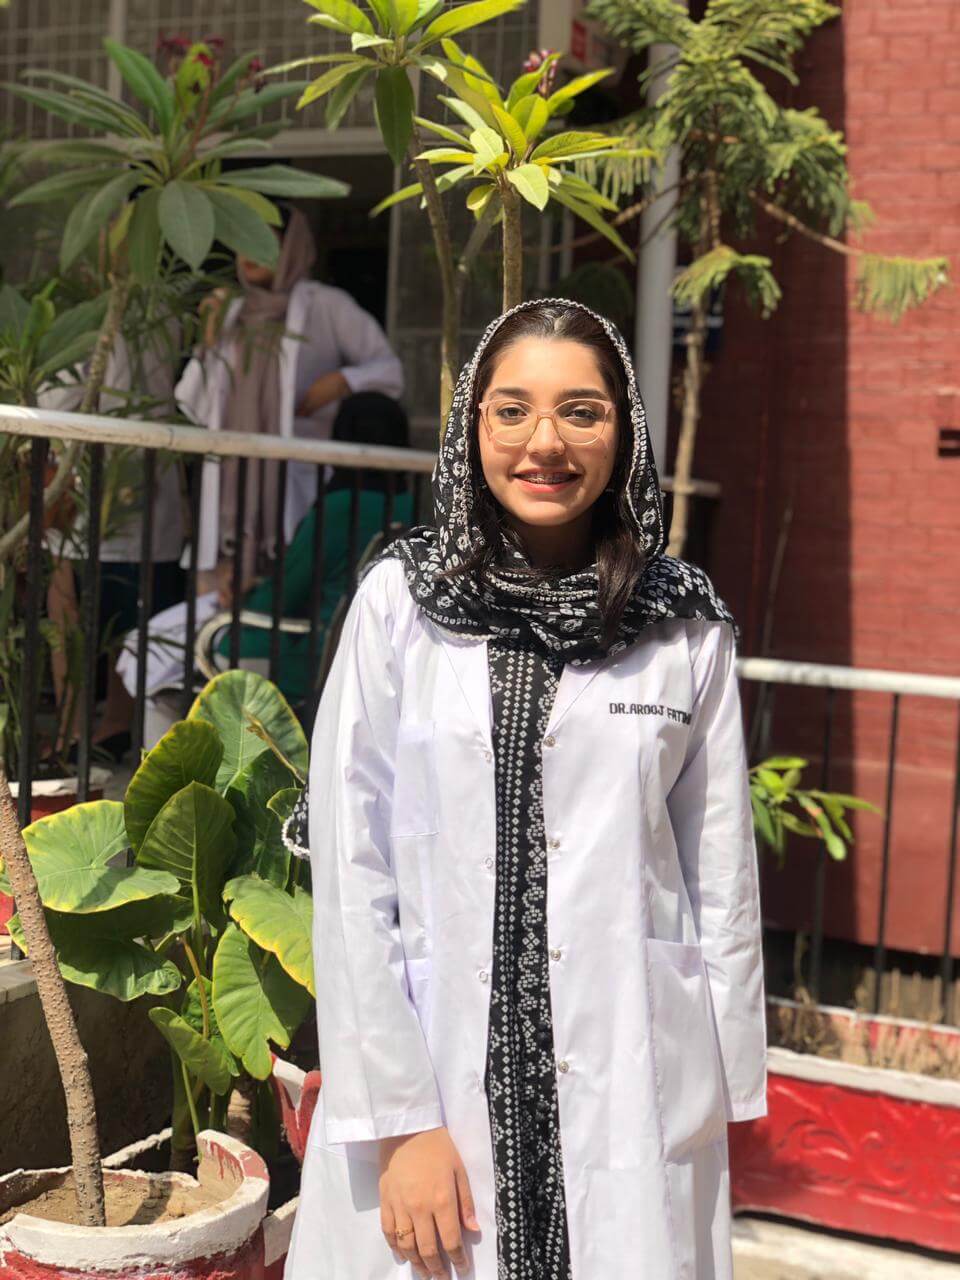 Dr. Arooj Fatima